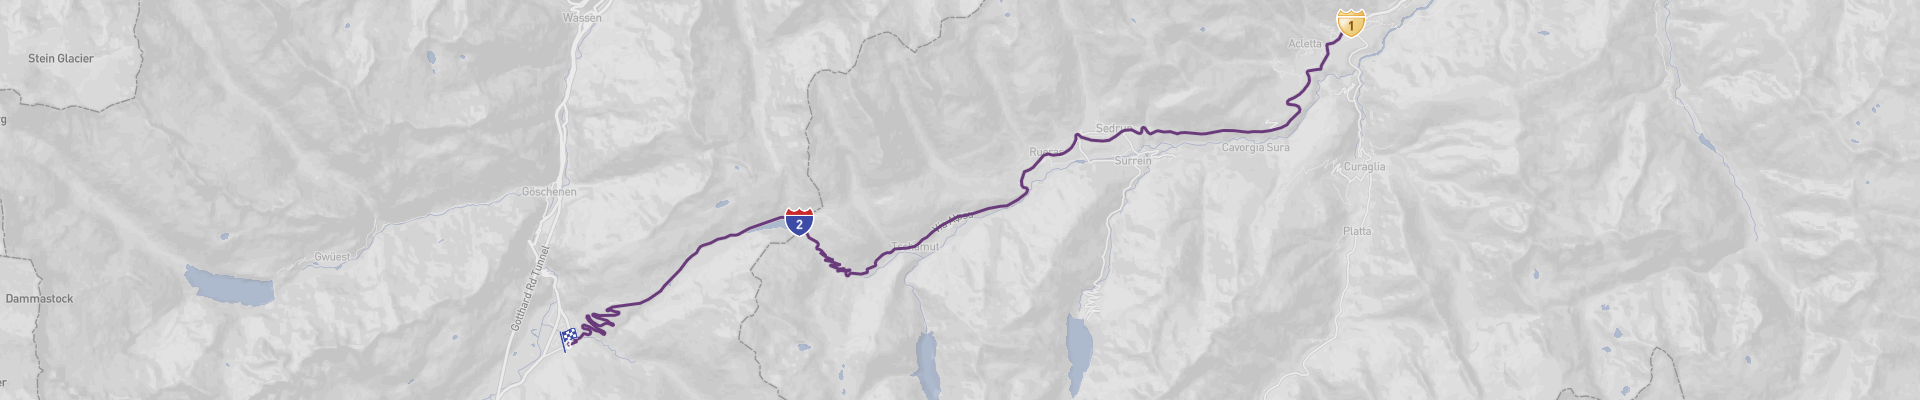 Oberalp Pass Rota Cénica